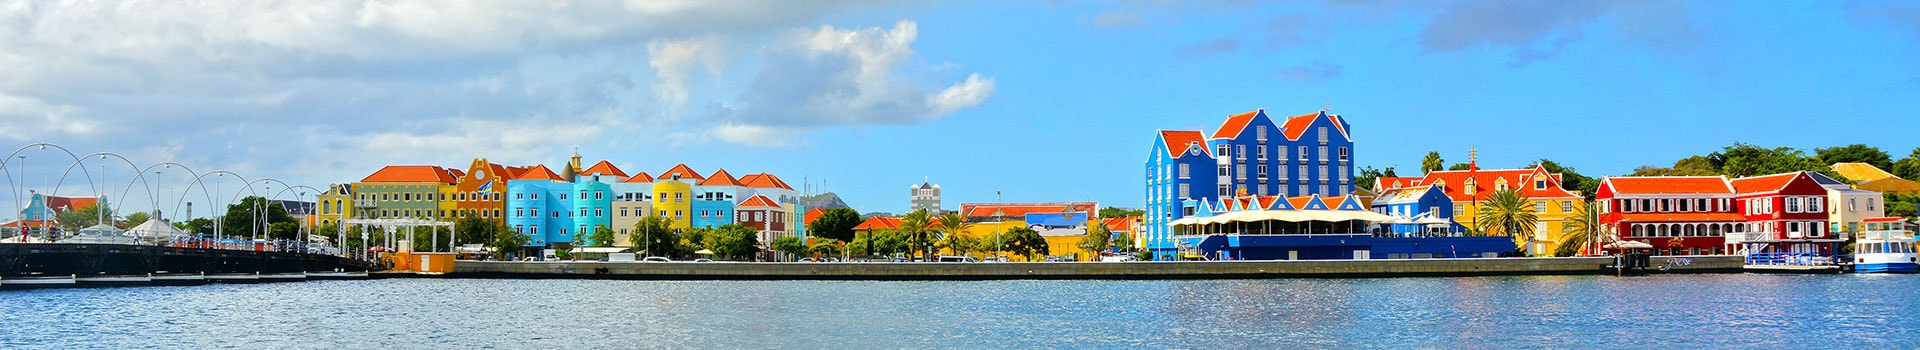 Valencia - Venezuela - Willemstad